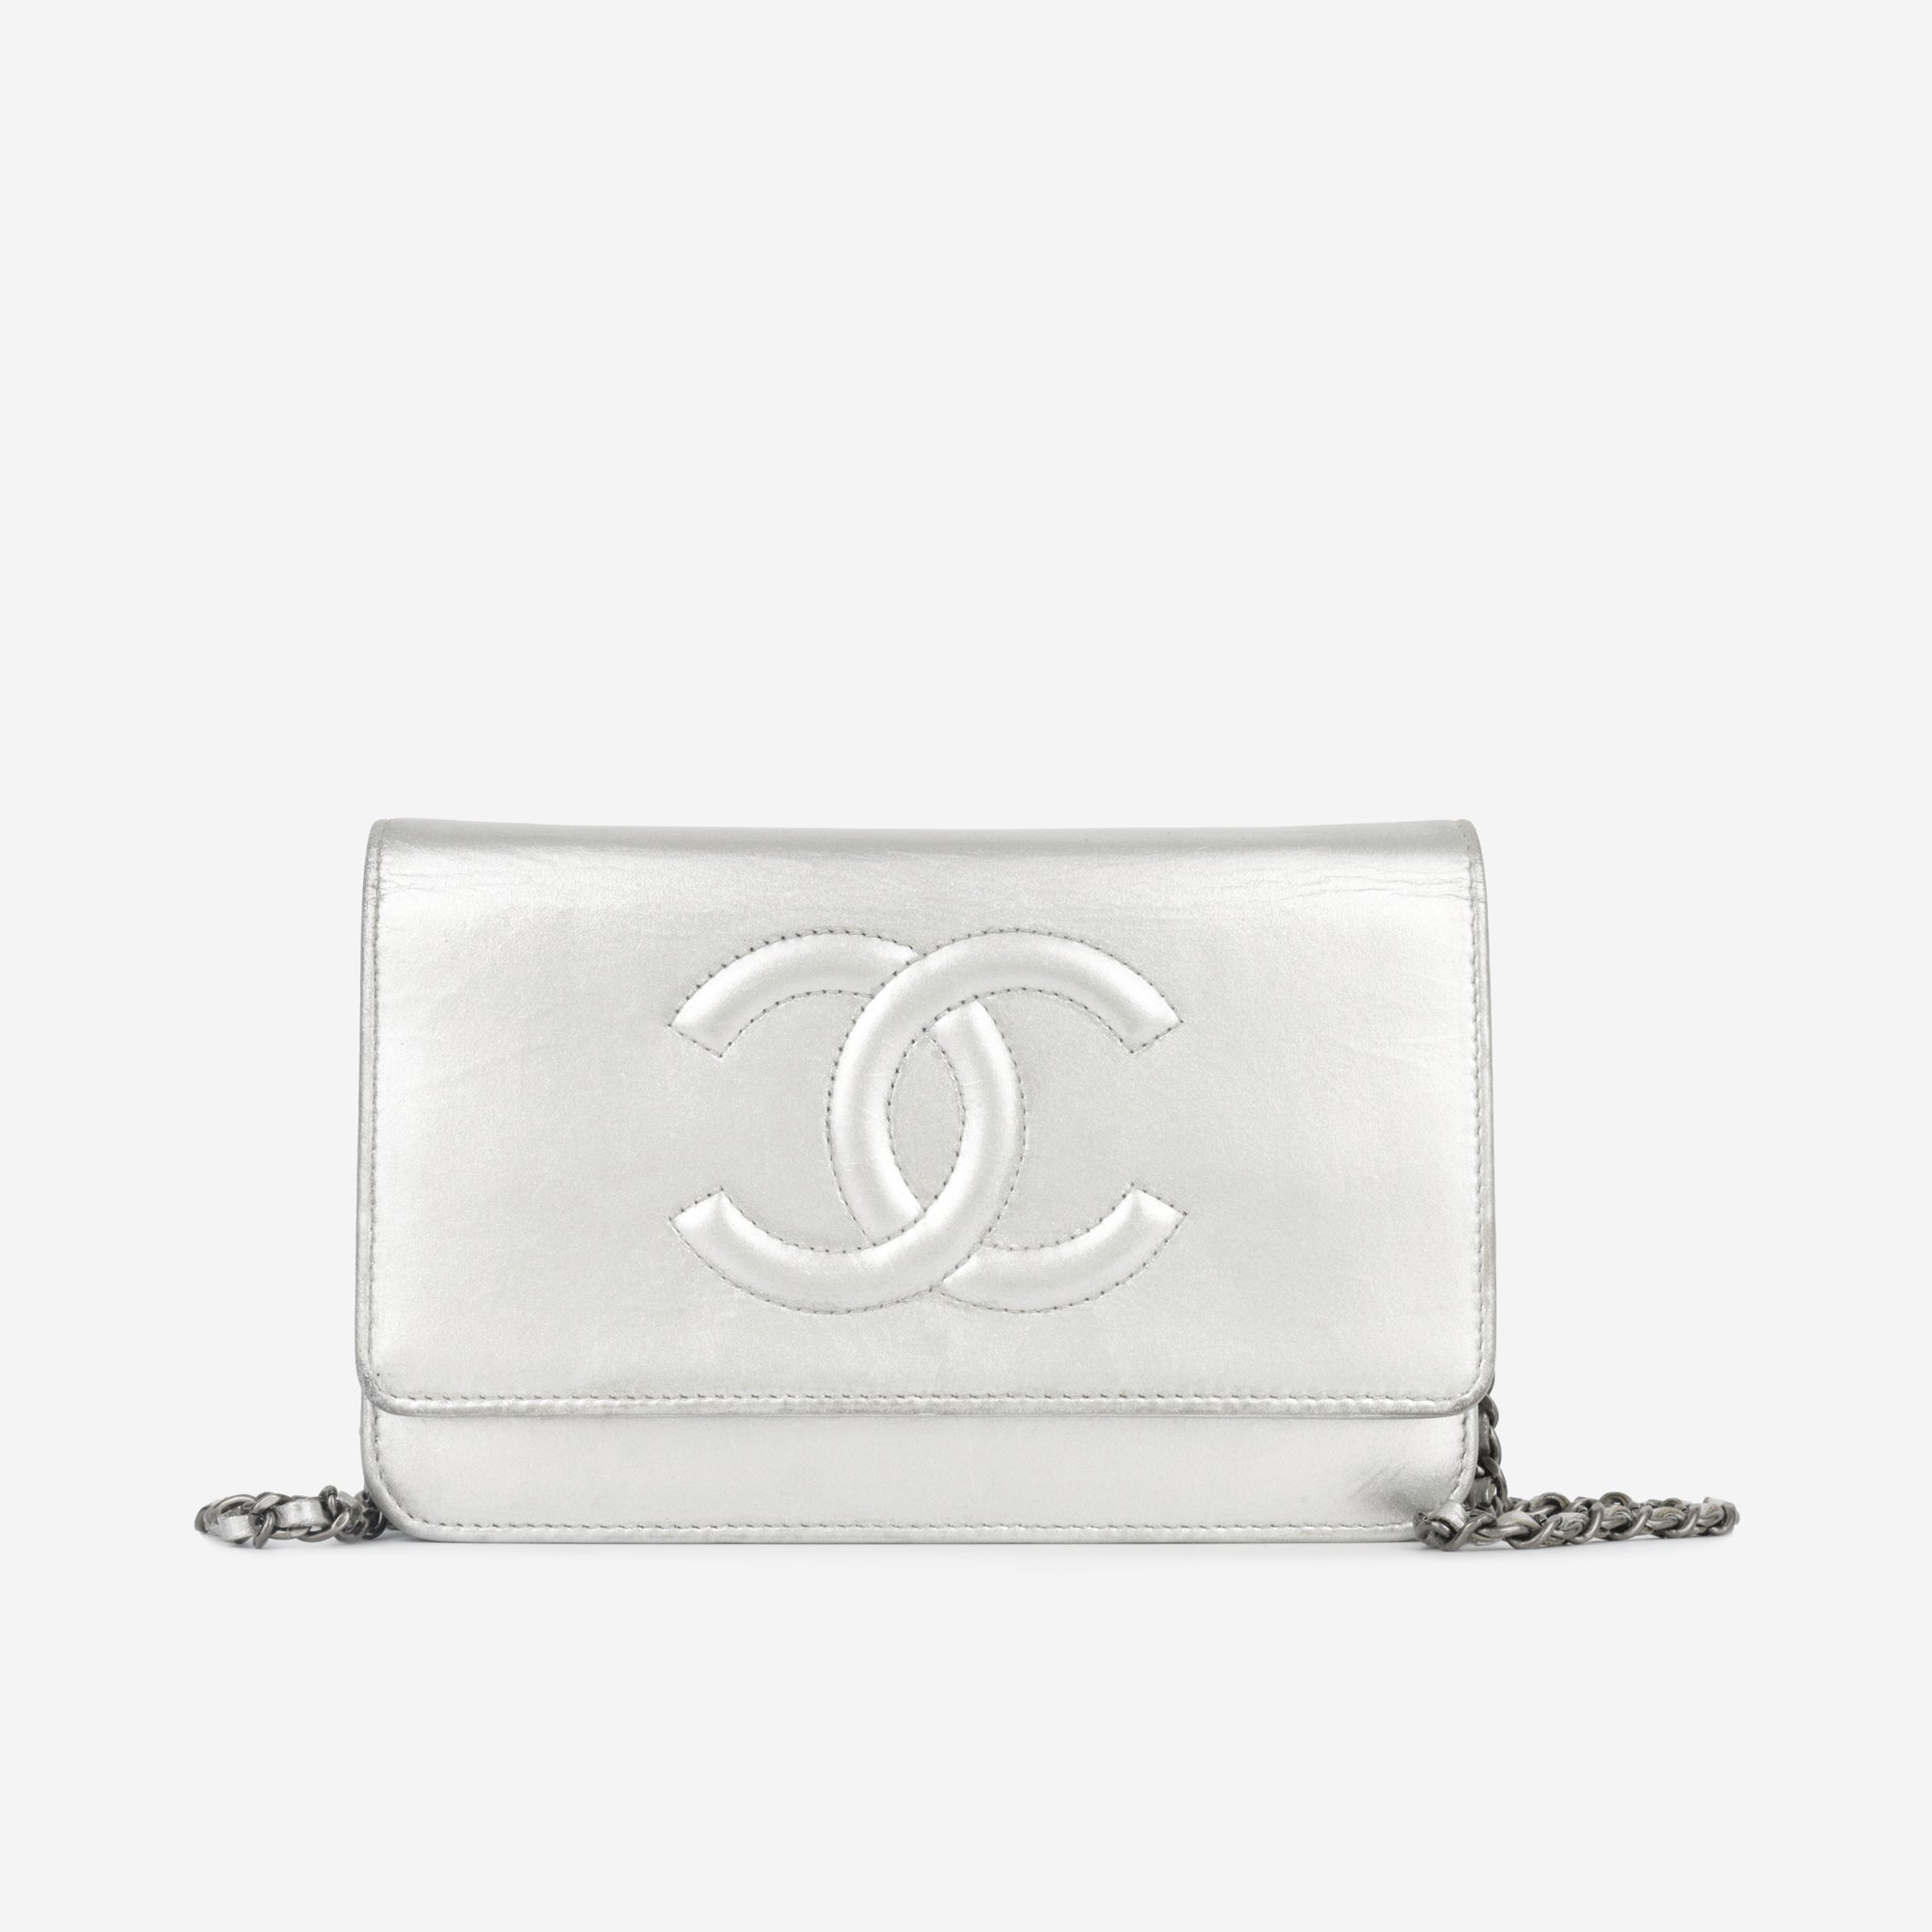 Chanel - Timeless Wallet on Chain - Silver Lambskin SHW - Pre Loved